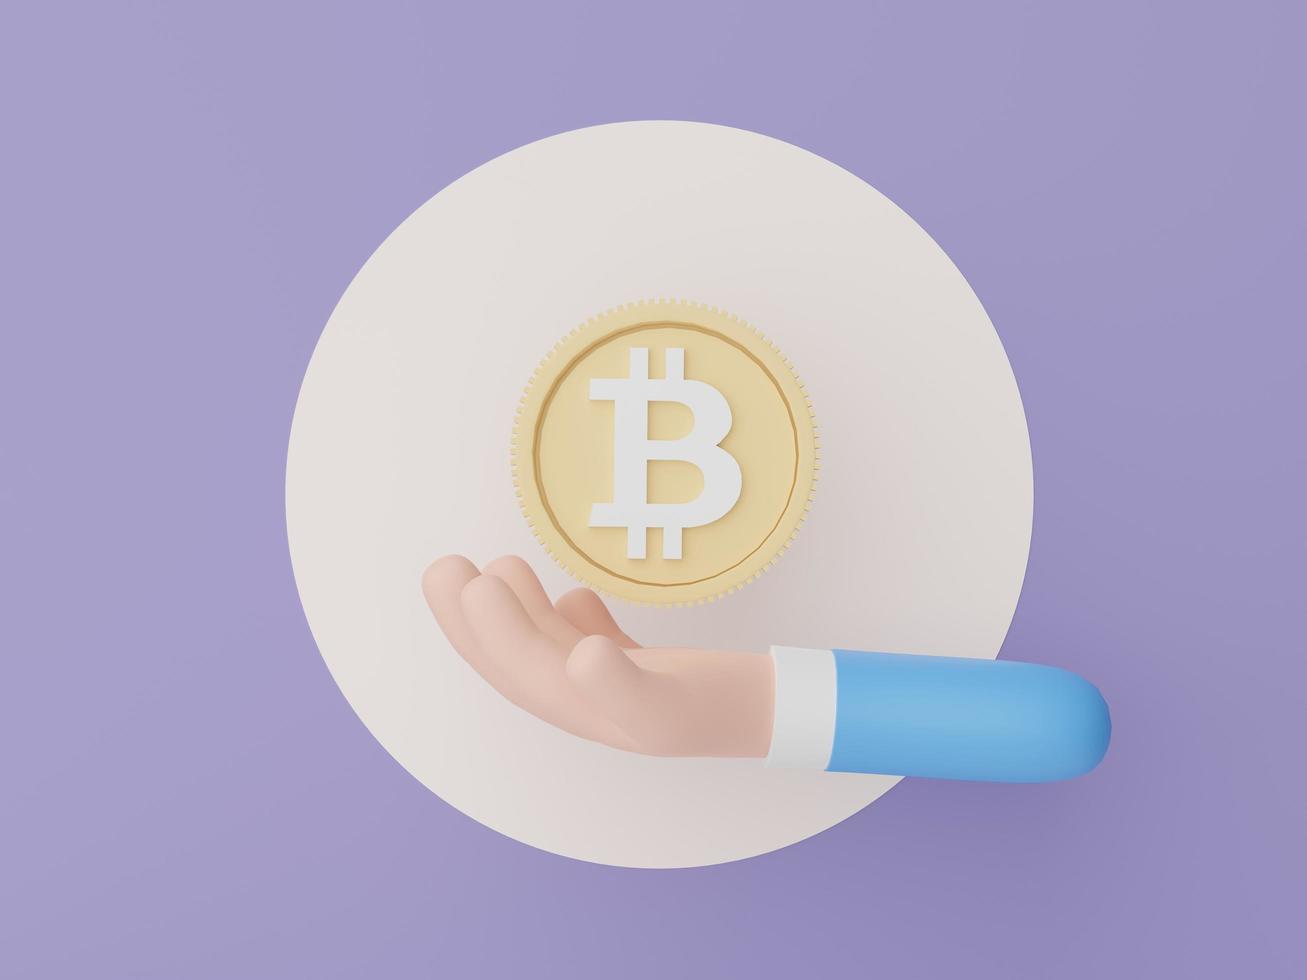 3D Render mano sujetando criptomoneda bitcoin. concepto de moneda digital de criptomoneda. nuevo intercambio de dinero virtual en blockchain. foto